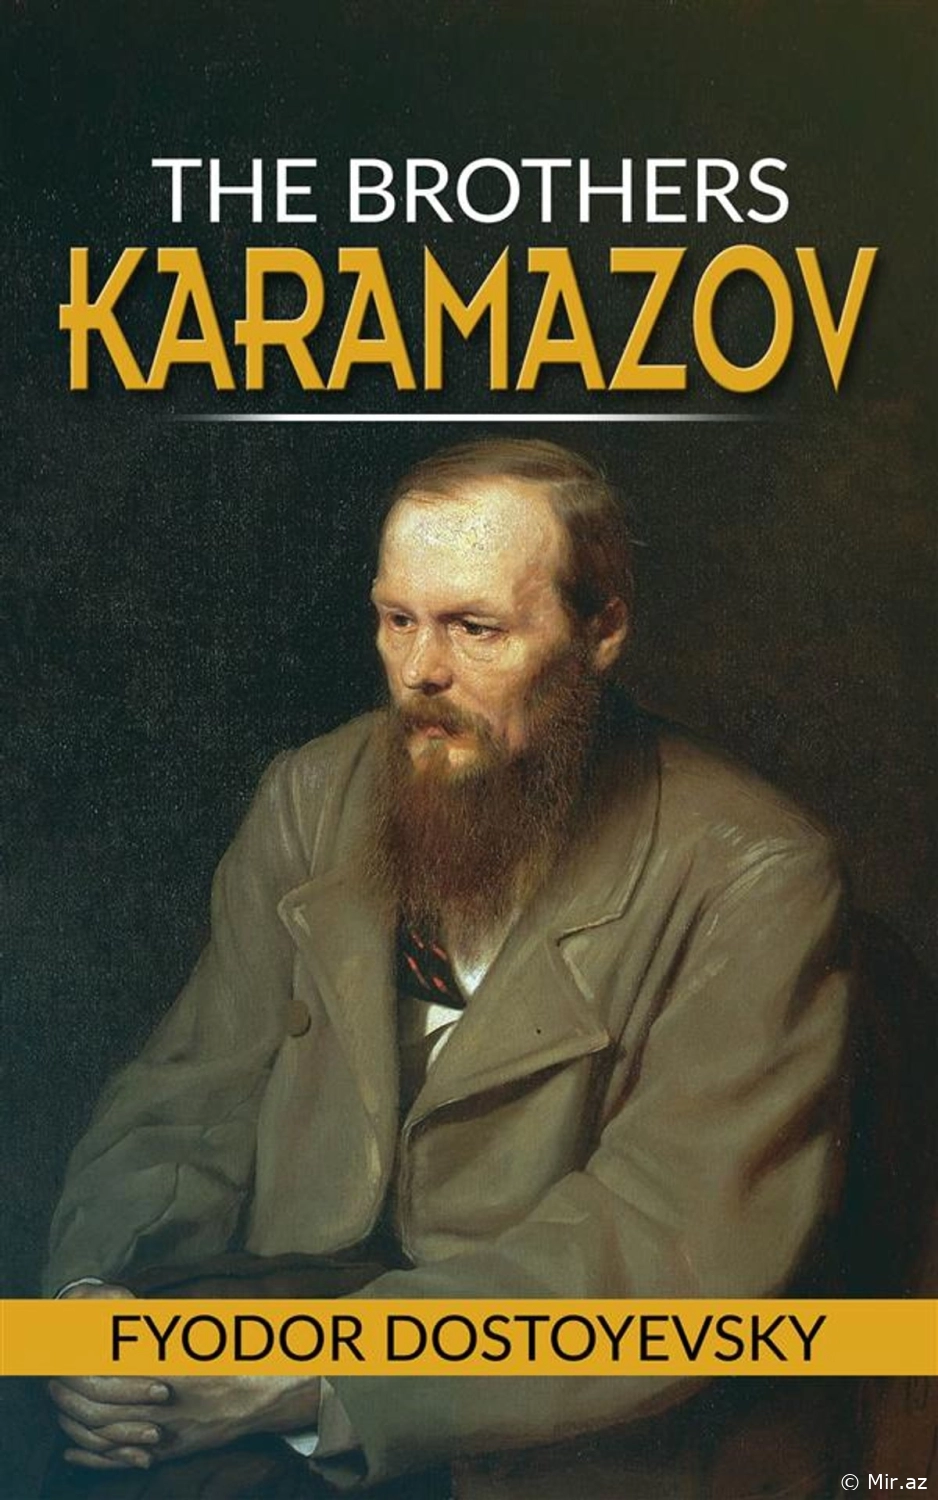 Fyodor Dostoevsky "The Brothers Karamazov" PDF